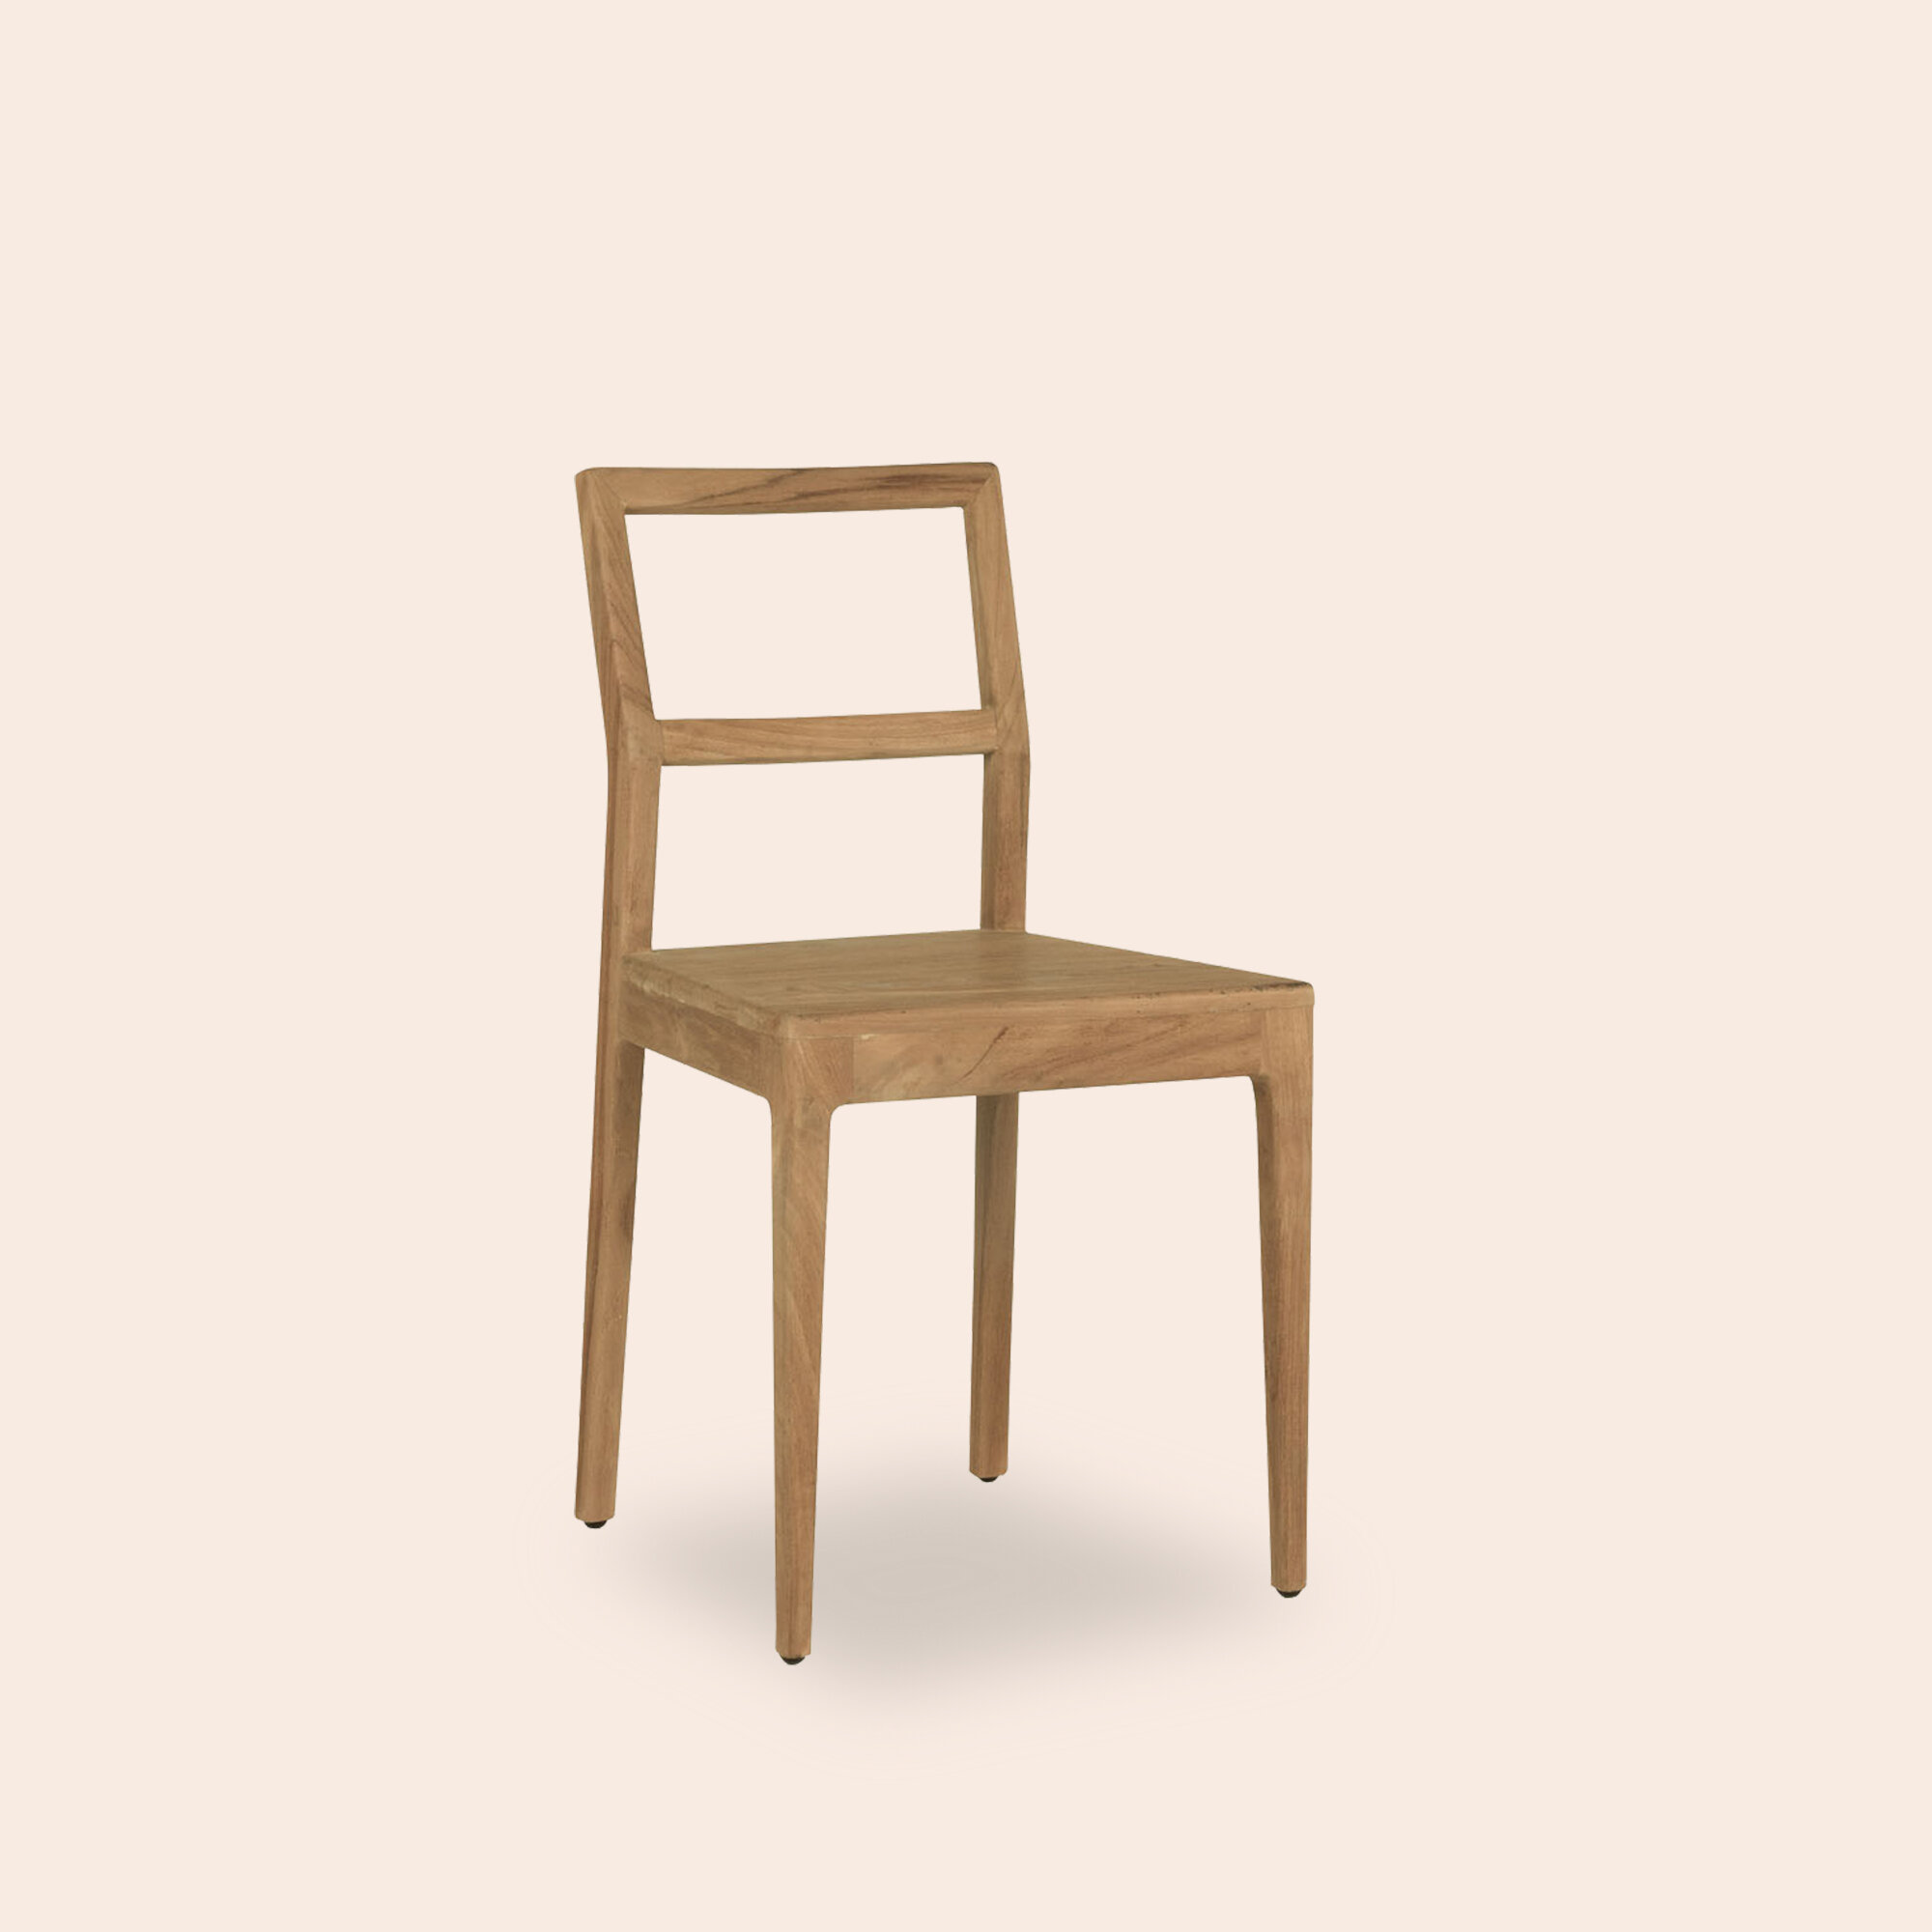 Jodoh Chair.jpg